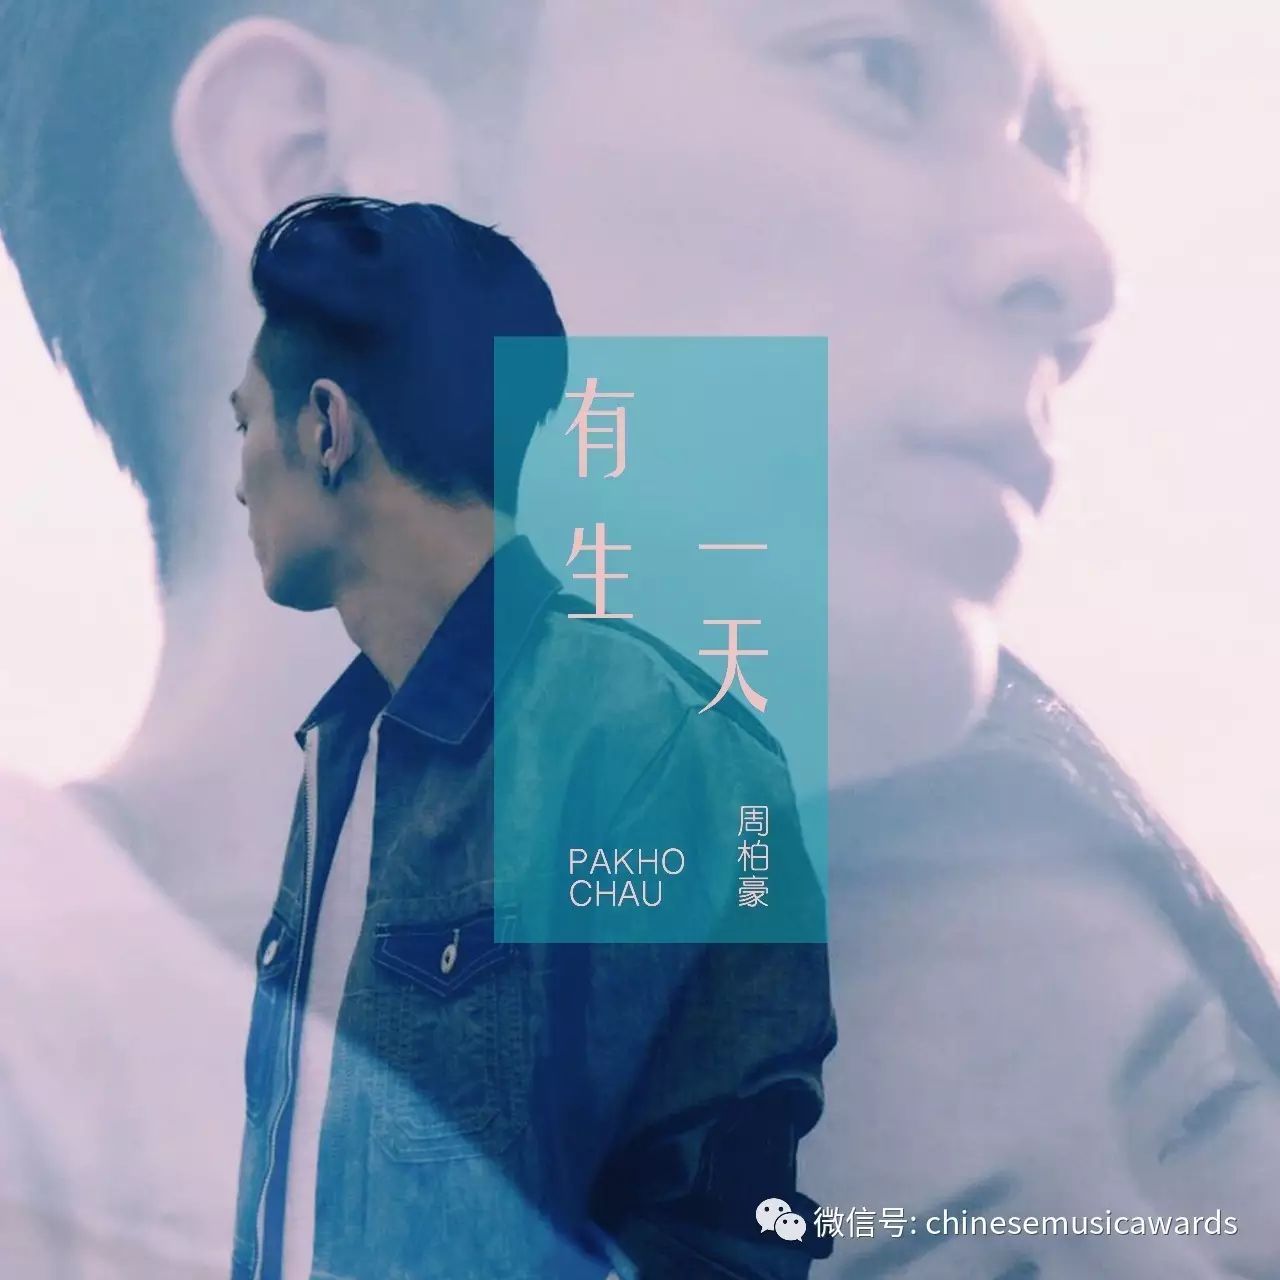 【榜单】华语金曲榜第245期 周柏豪《有生一天》冠军